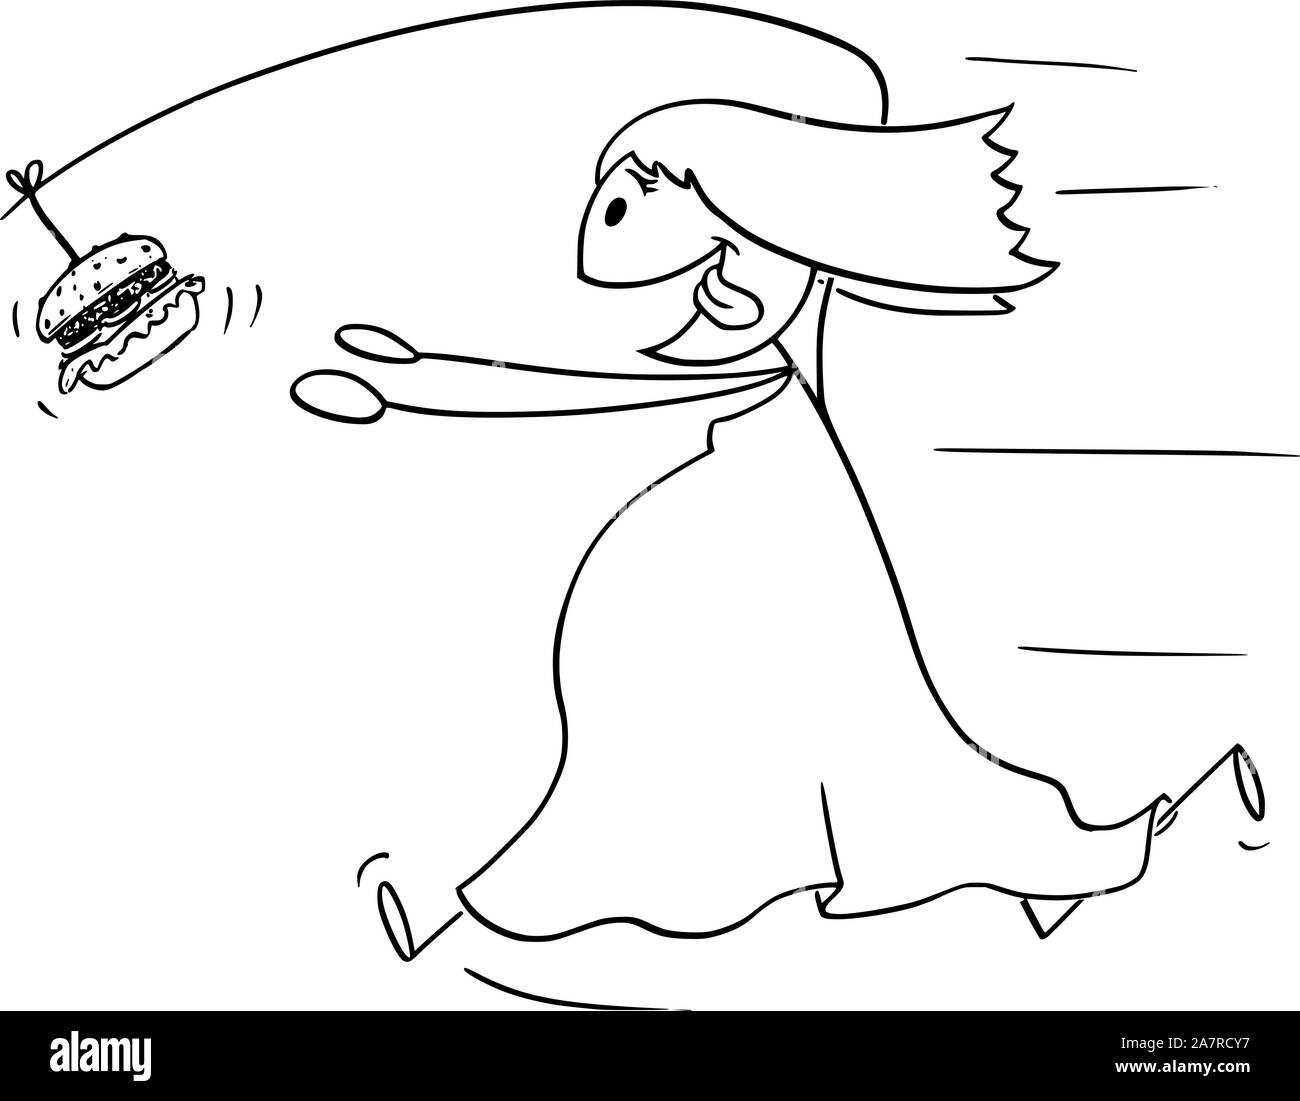 Vektor cartoon Strichmännchen Zeichnung konzeptuelle Abbildung: Fett Übergewicht Frau jagen ungesunde Junk Food Burger oder Hamburger auf Angel auf dem Rücken befestigt. Stock Vektor